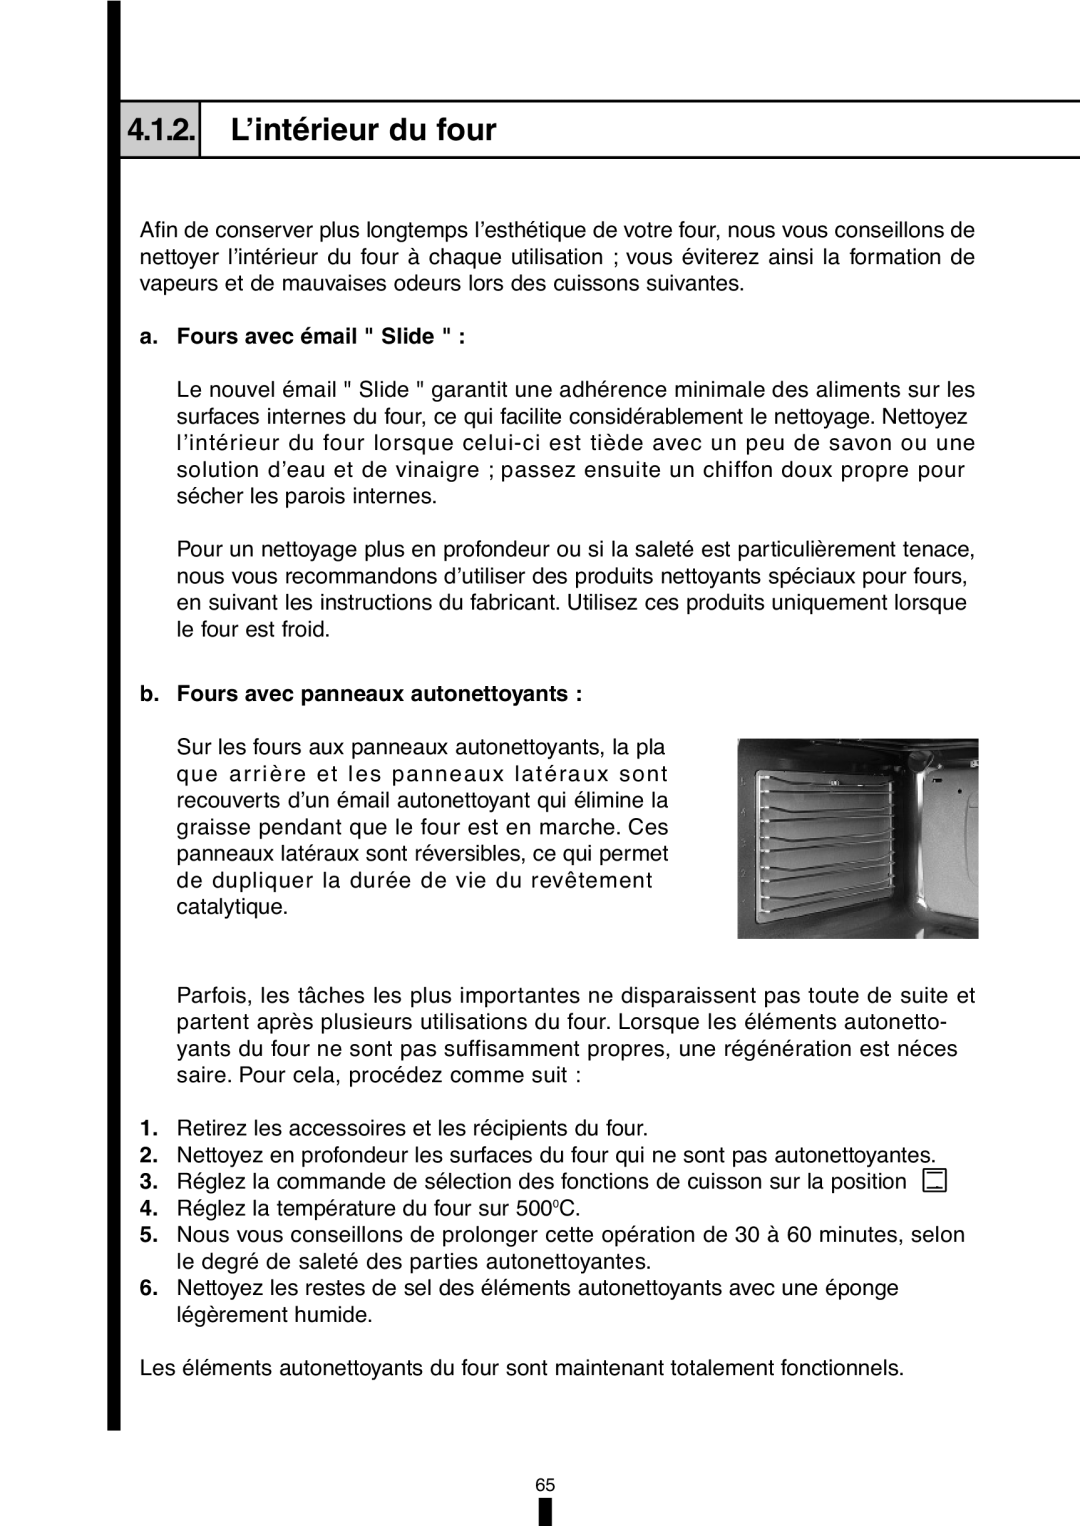 Fagor America 5HA-196X manual L’intérieur du four, a.Fours avec émail Slide, b.Fours avec panneaux autonettoyants, 4.1.2 